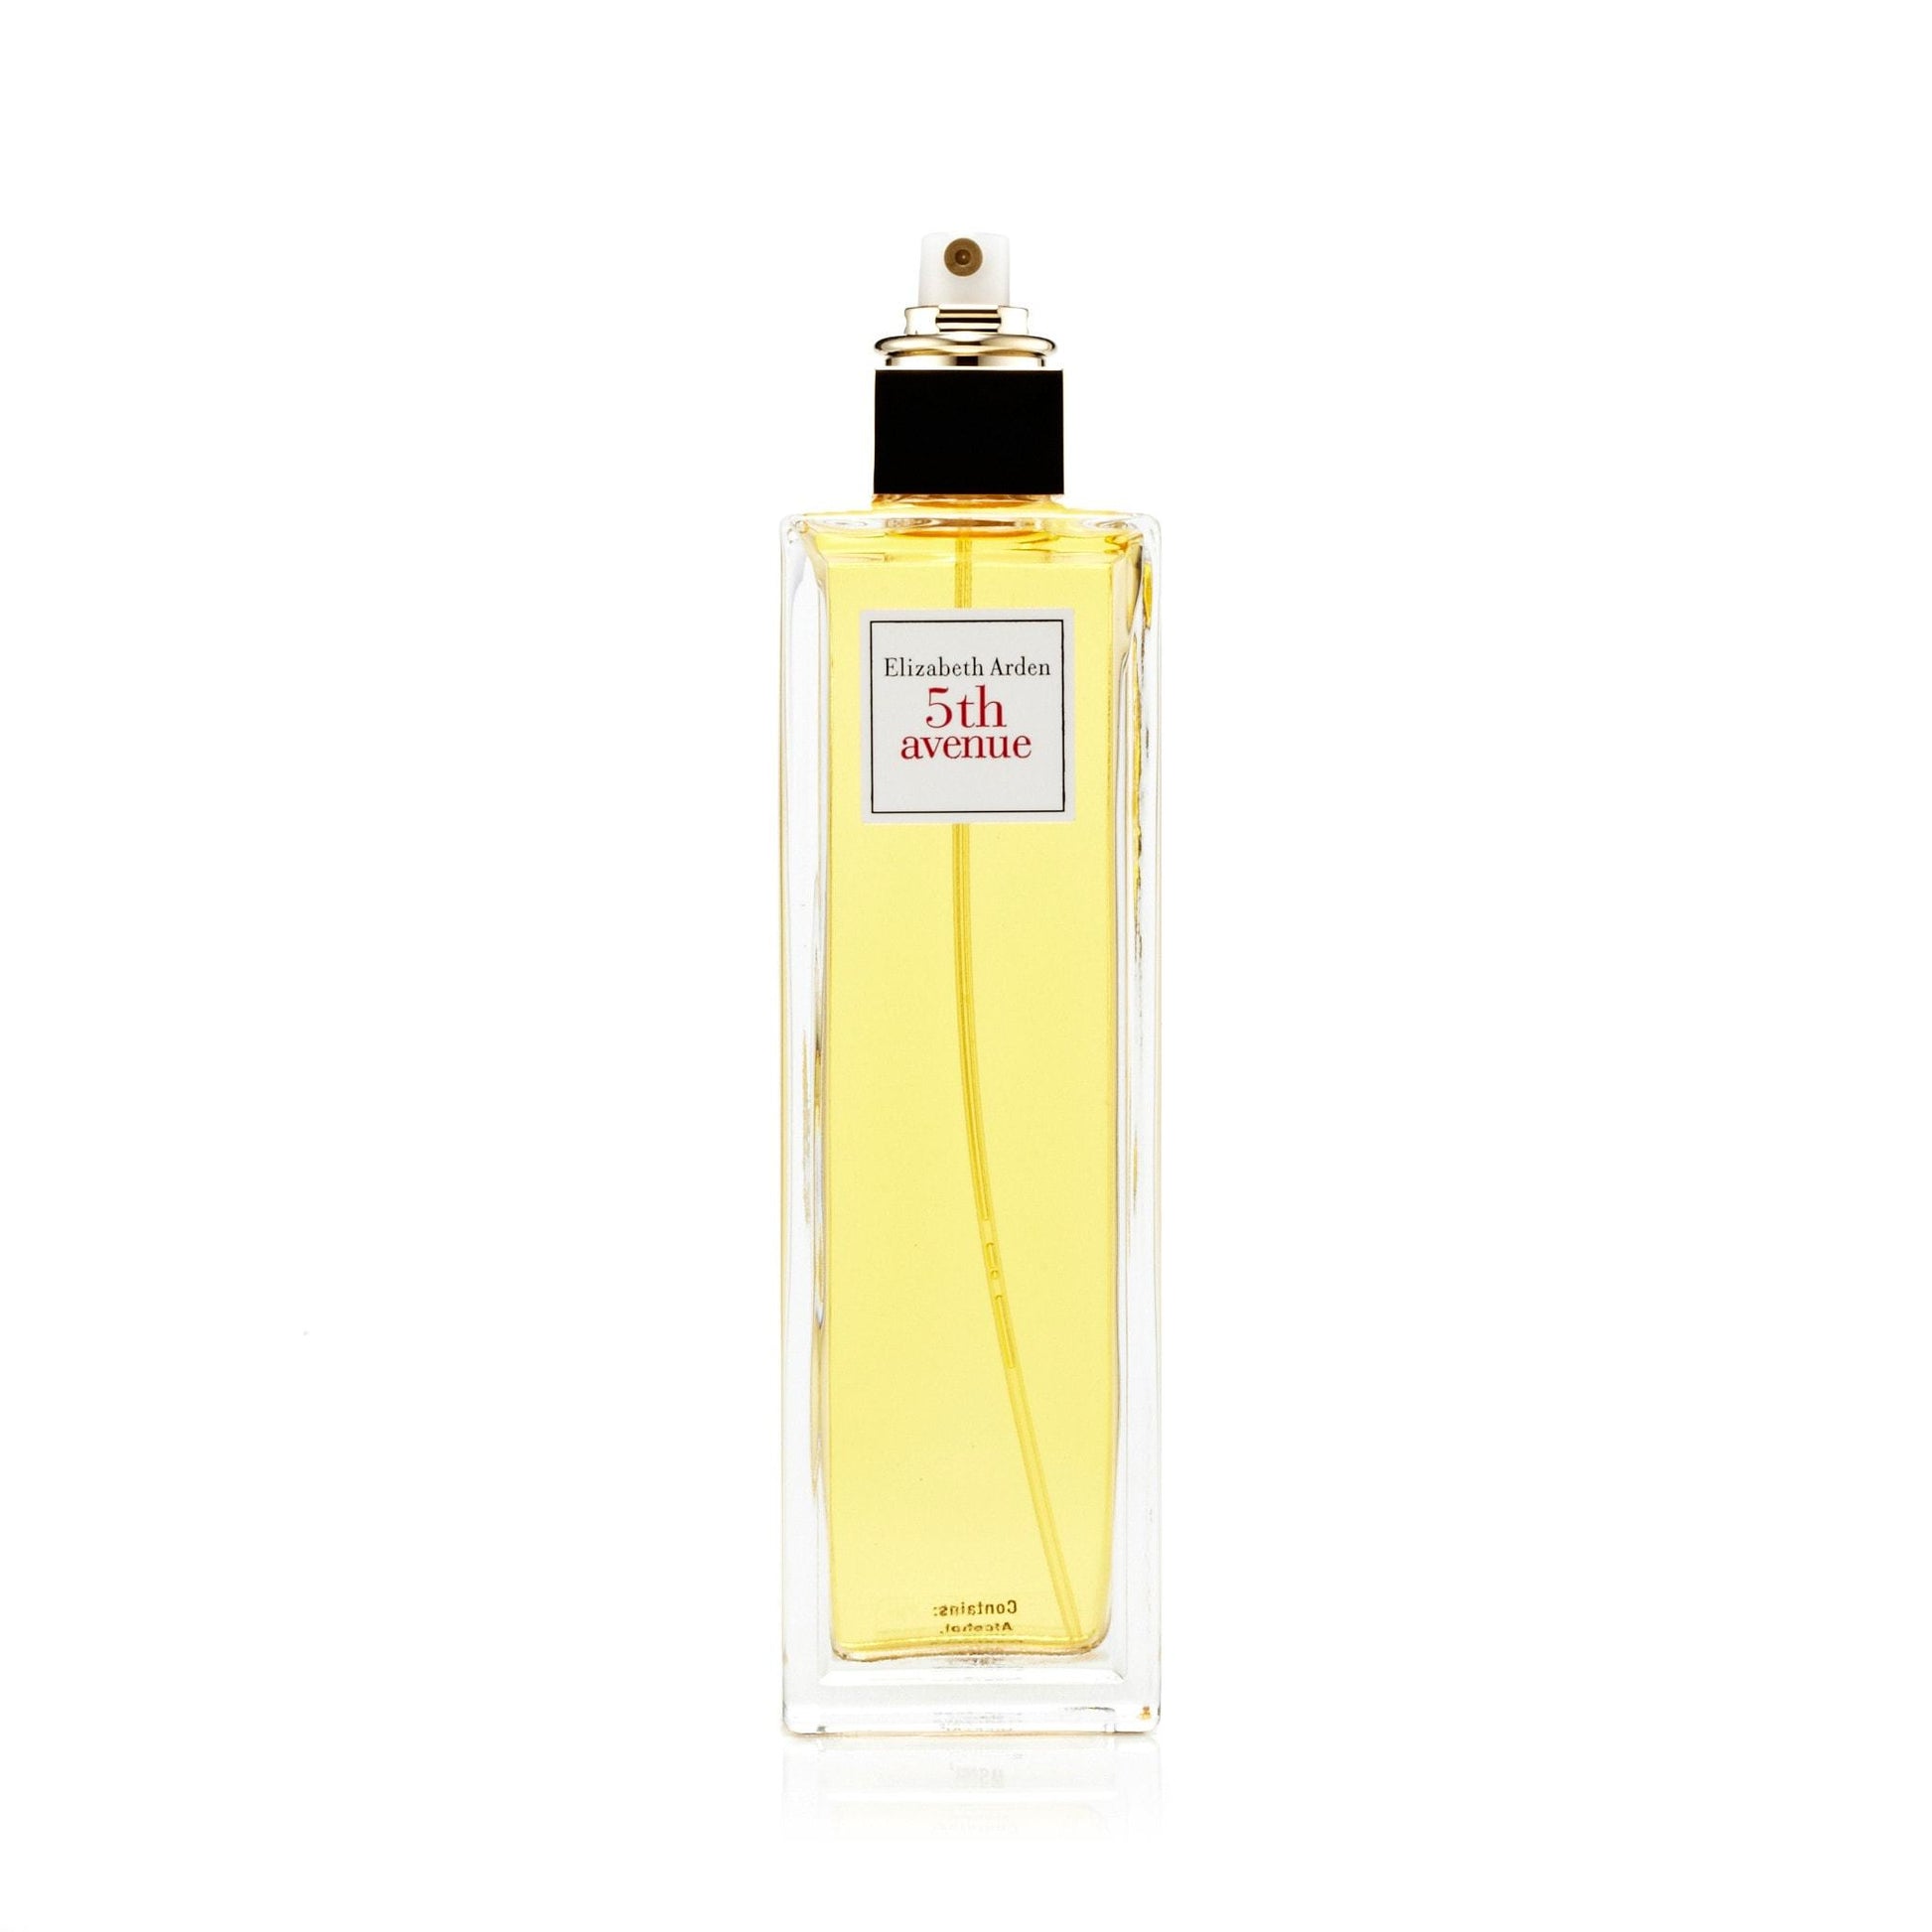 5th Ave. Eau de Parfum Spray for Women by Elizabeth Arden, Product image 6